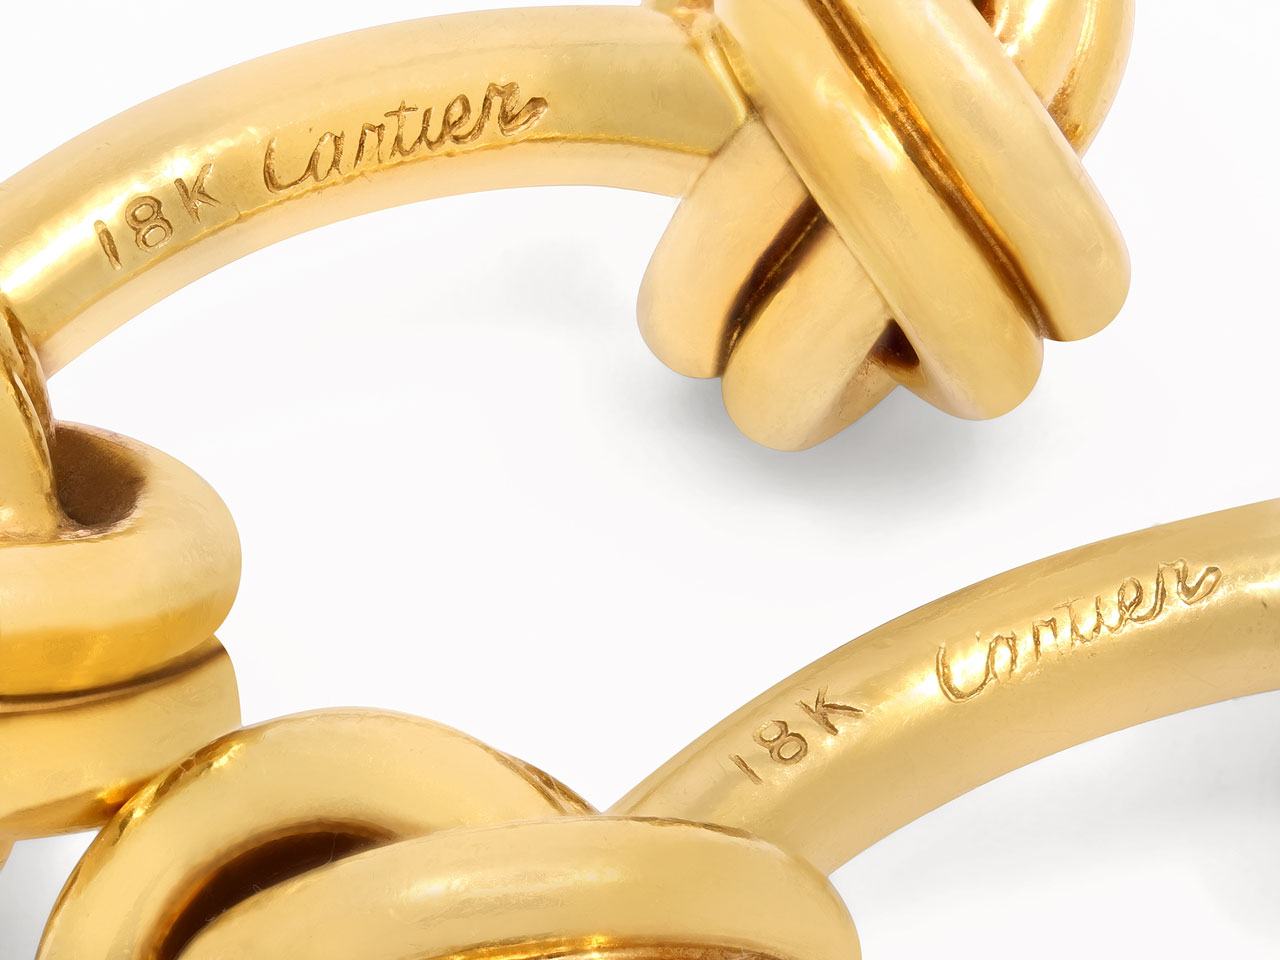 Cartier Knot Cufflinks in 18K Gold